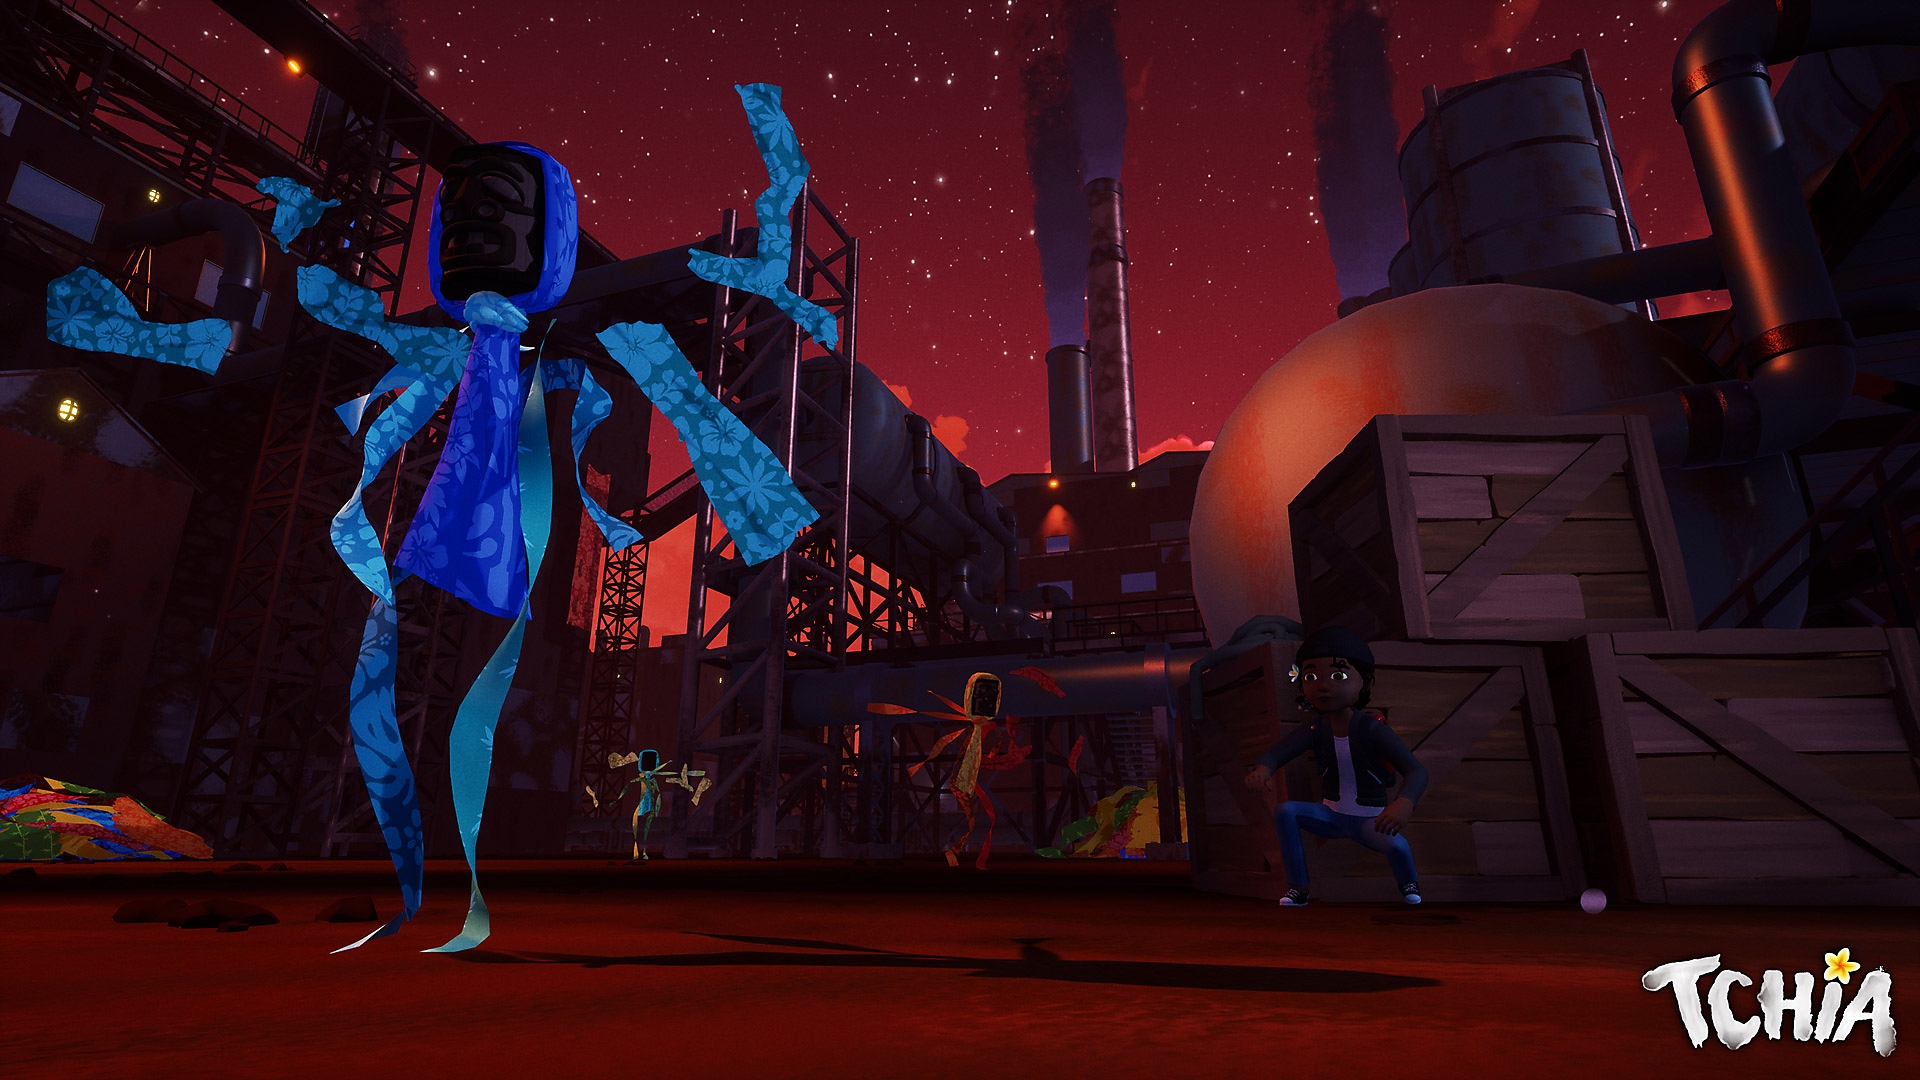 Snimka zaslona iz igre Tchia prikazuje scenu u zgradi nalik tvornici